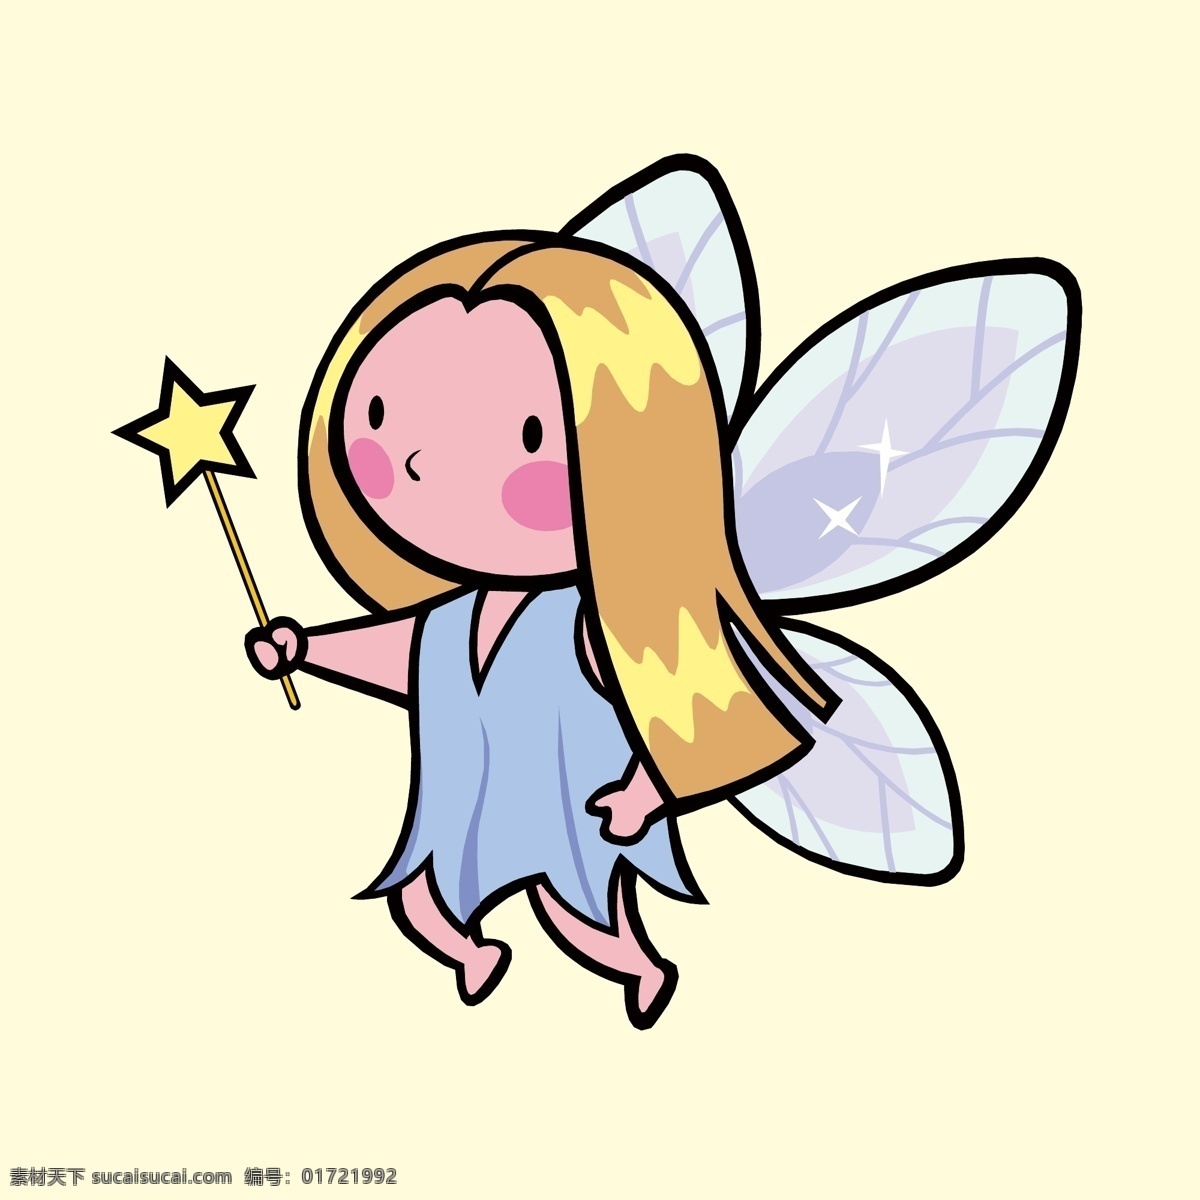 着魔 法 棒 仙女 魔法棒仙女 小仙女 仙女的翅膀 蝴蝶仙女 人物插画设计 男性人物设计 女性人物设计 儿童人物设计